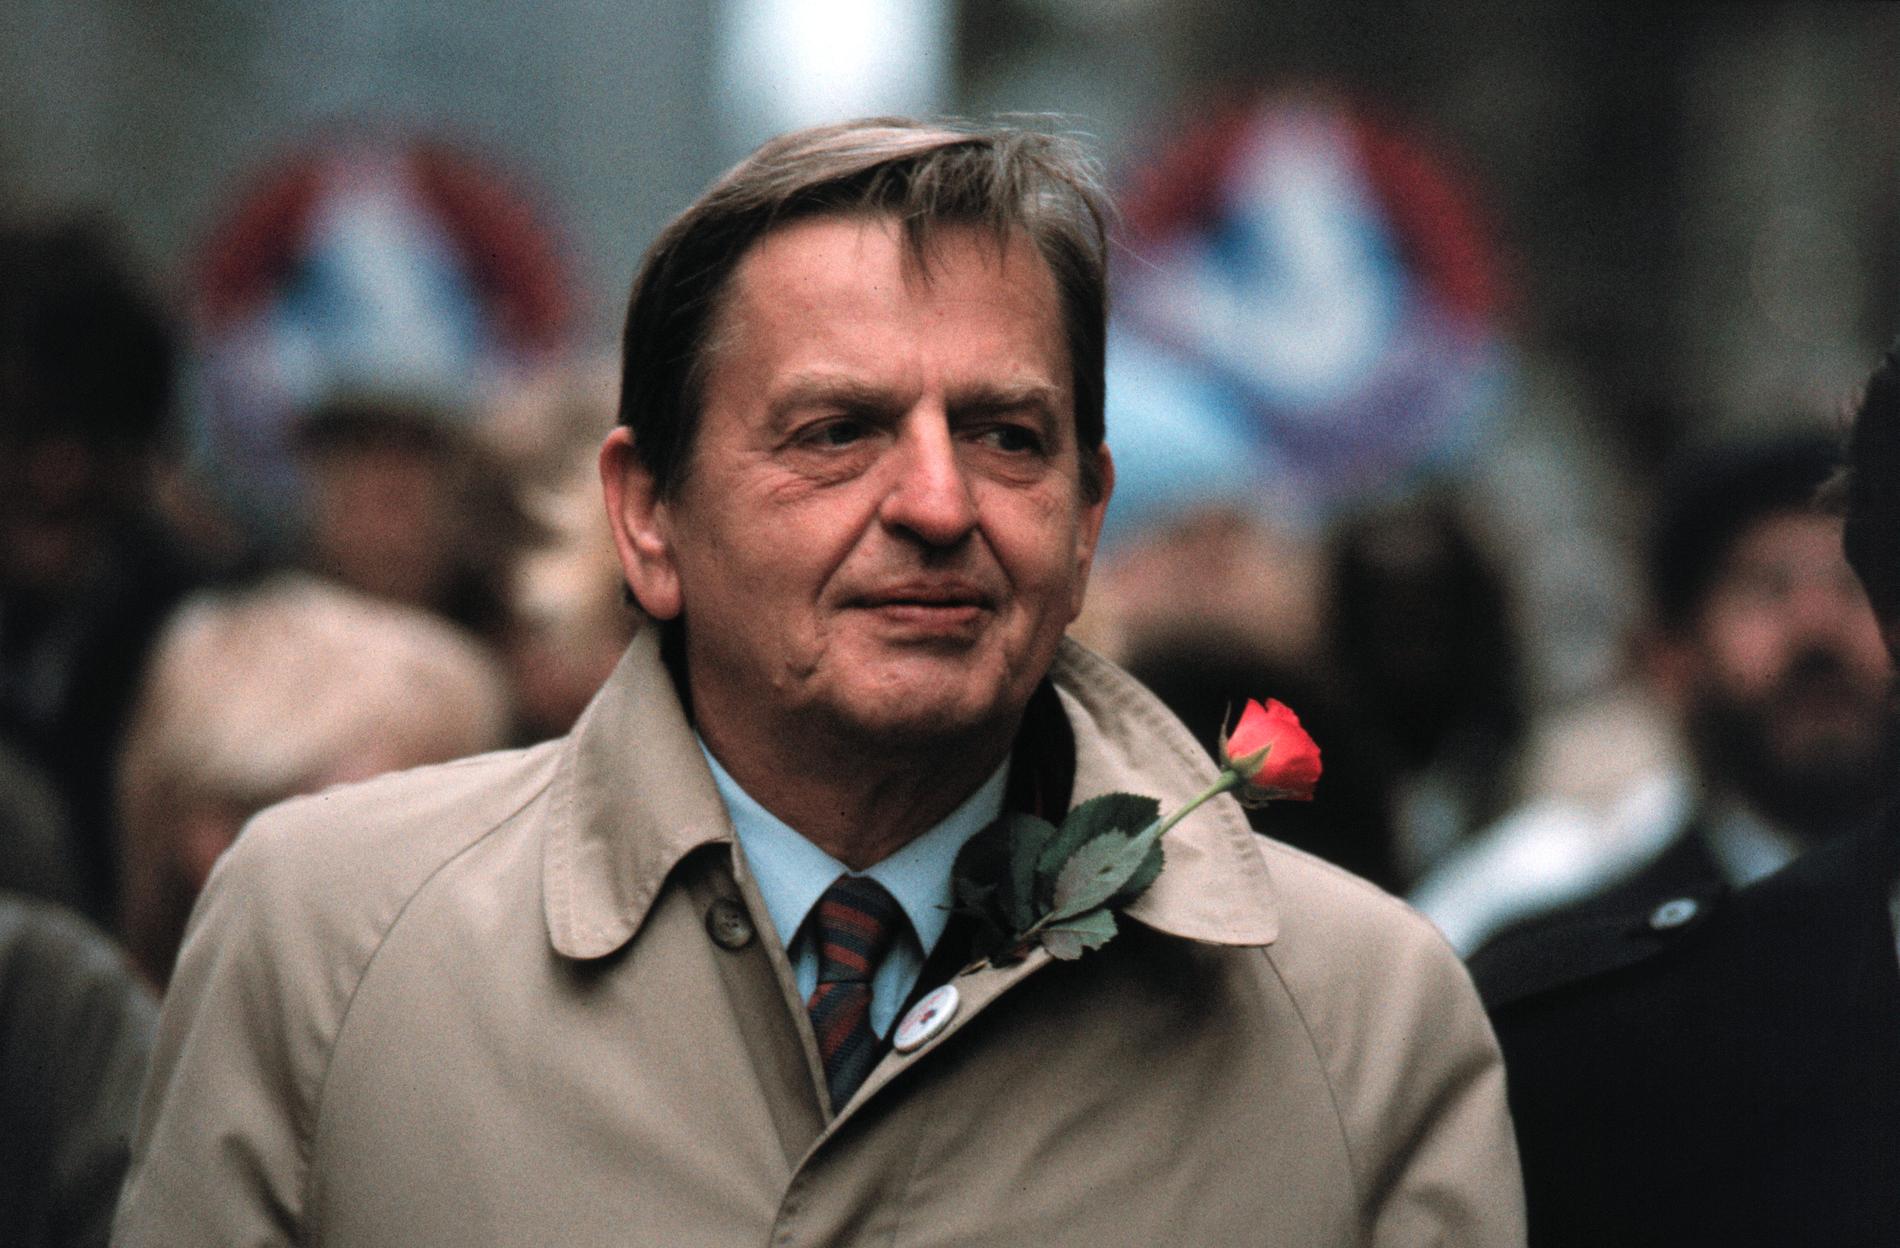 Statsminister Olof Palme sköts till döds i korsningen Tunnelgatan/Sveavägen den 28 februari 1986.